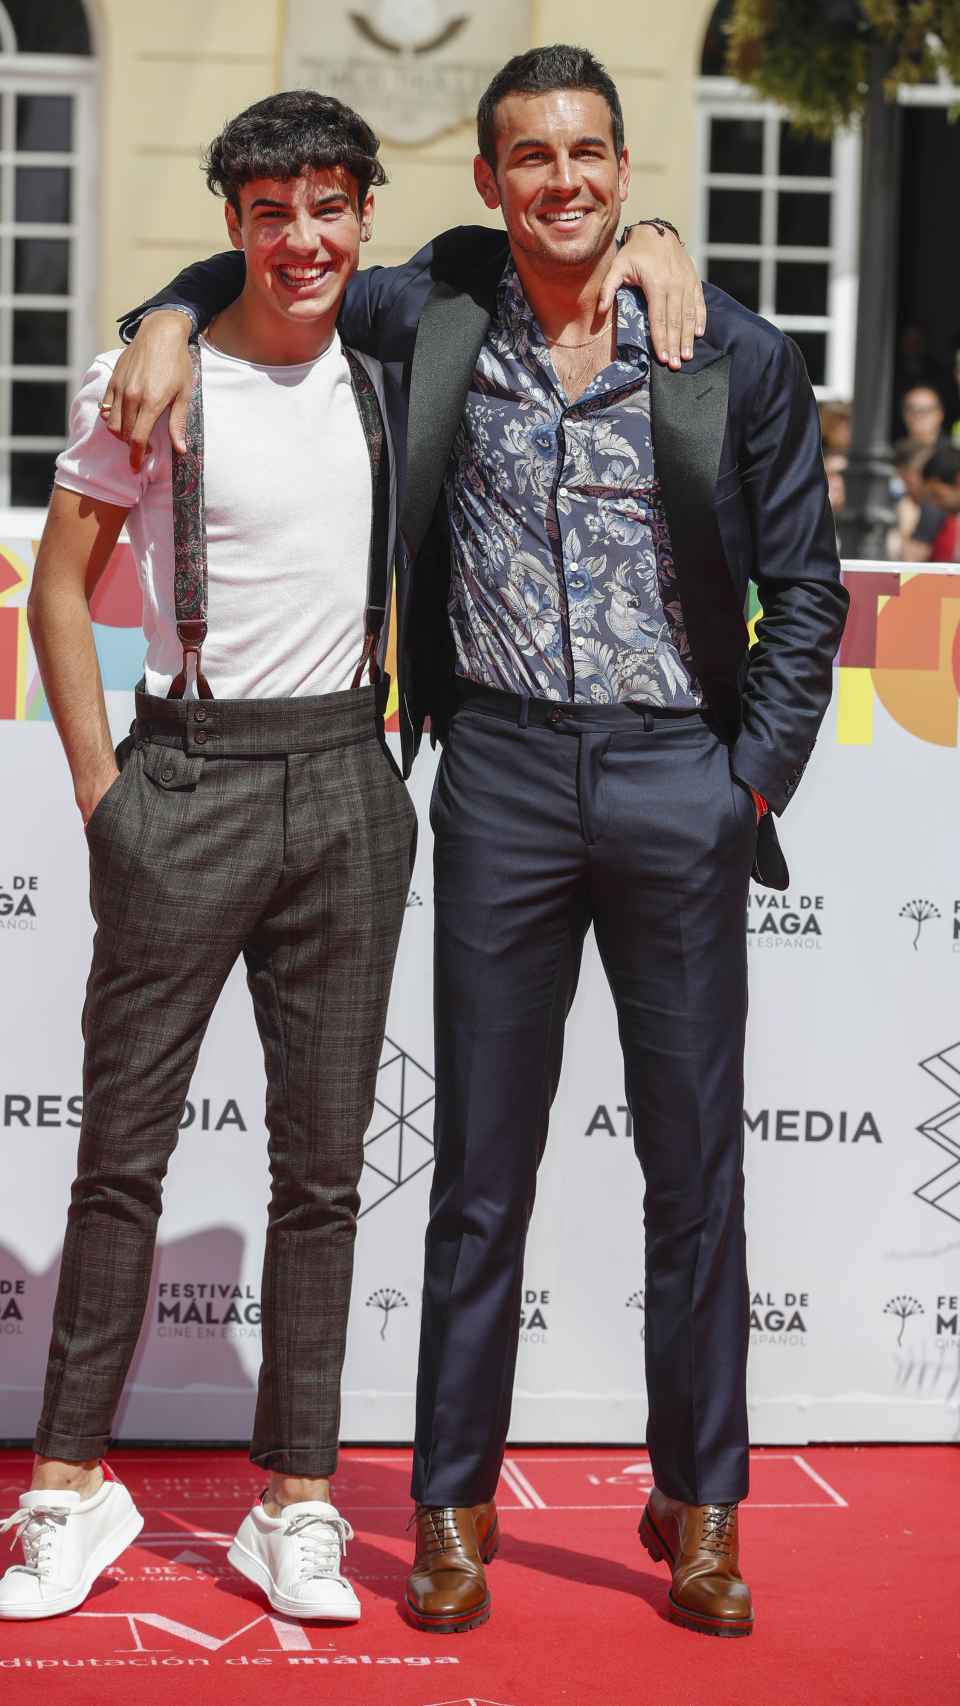 Óscar y Mario Casas posando juntos en el Festival de Málaga.